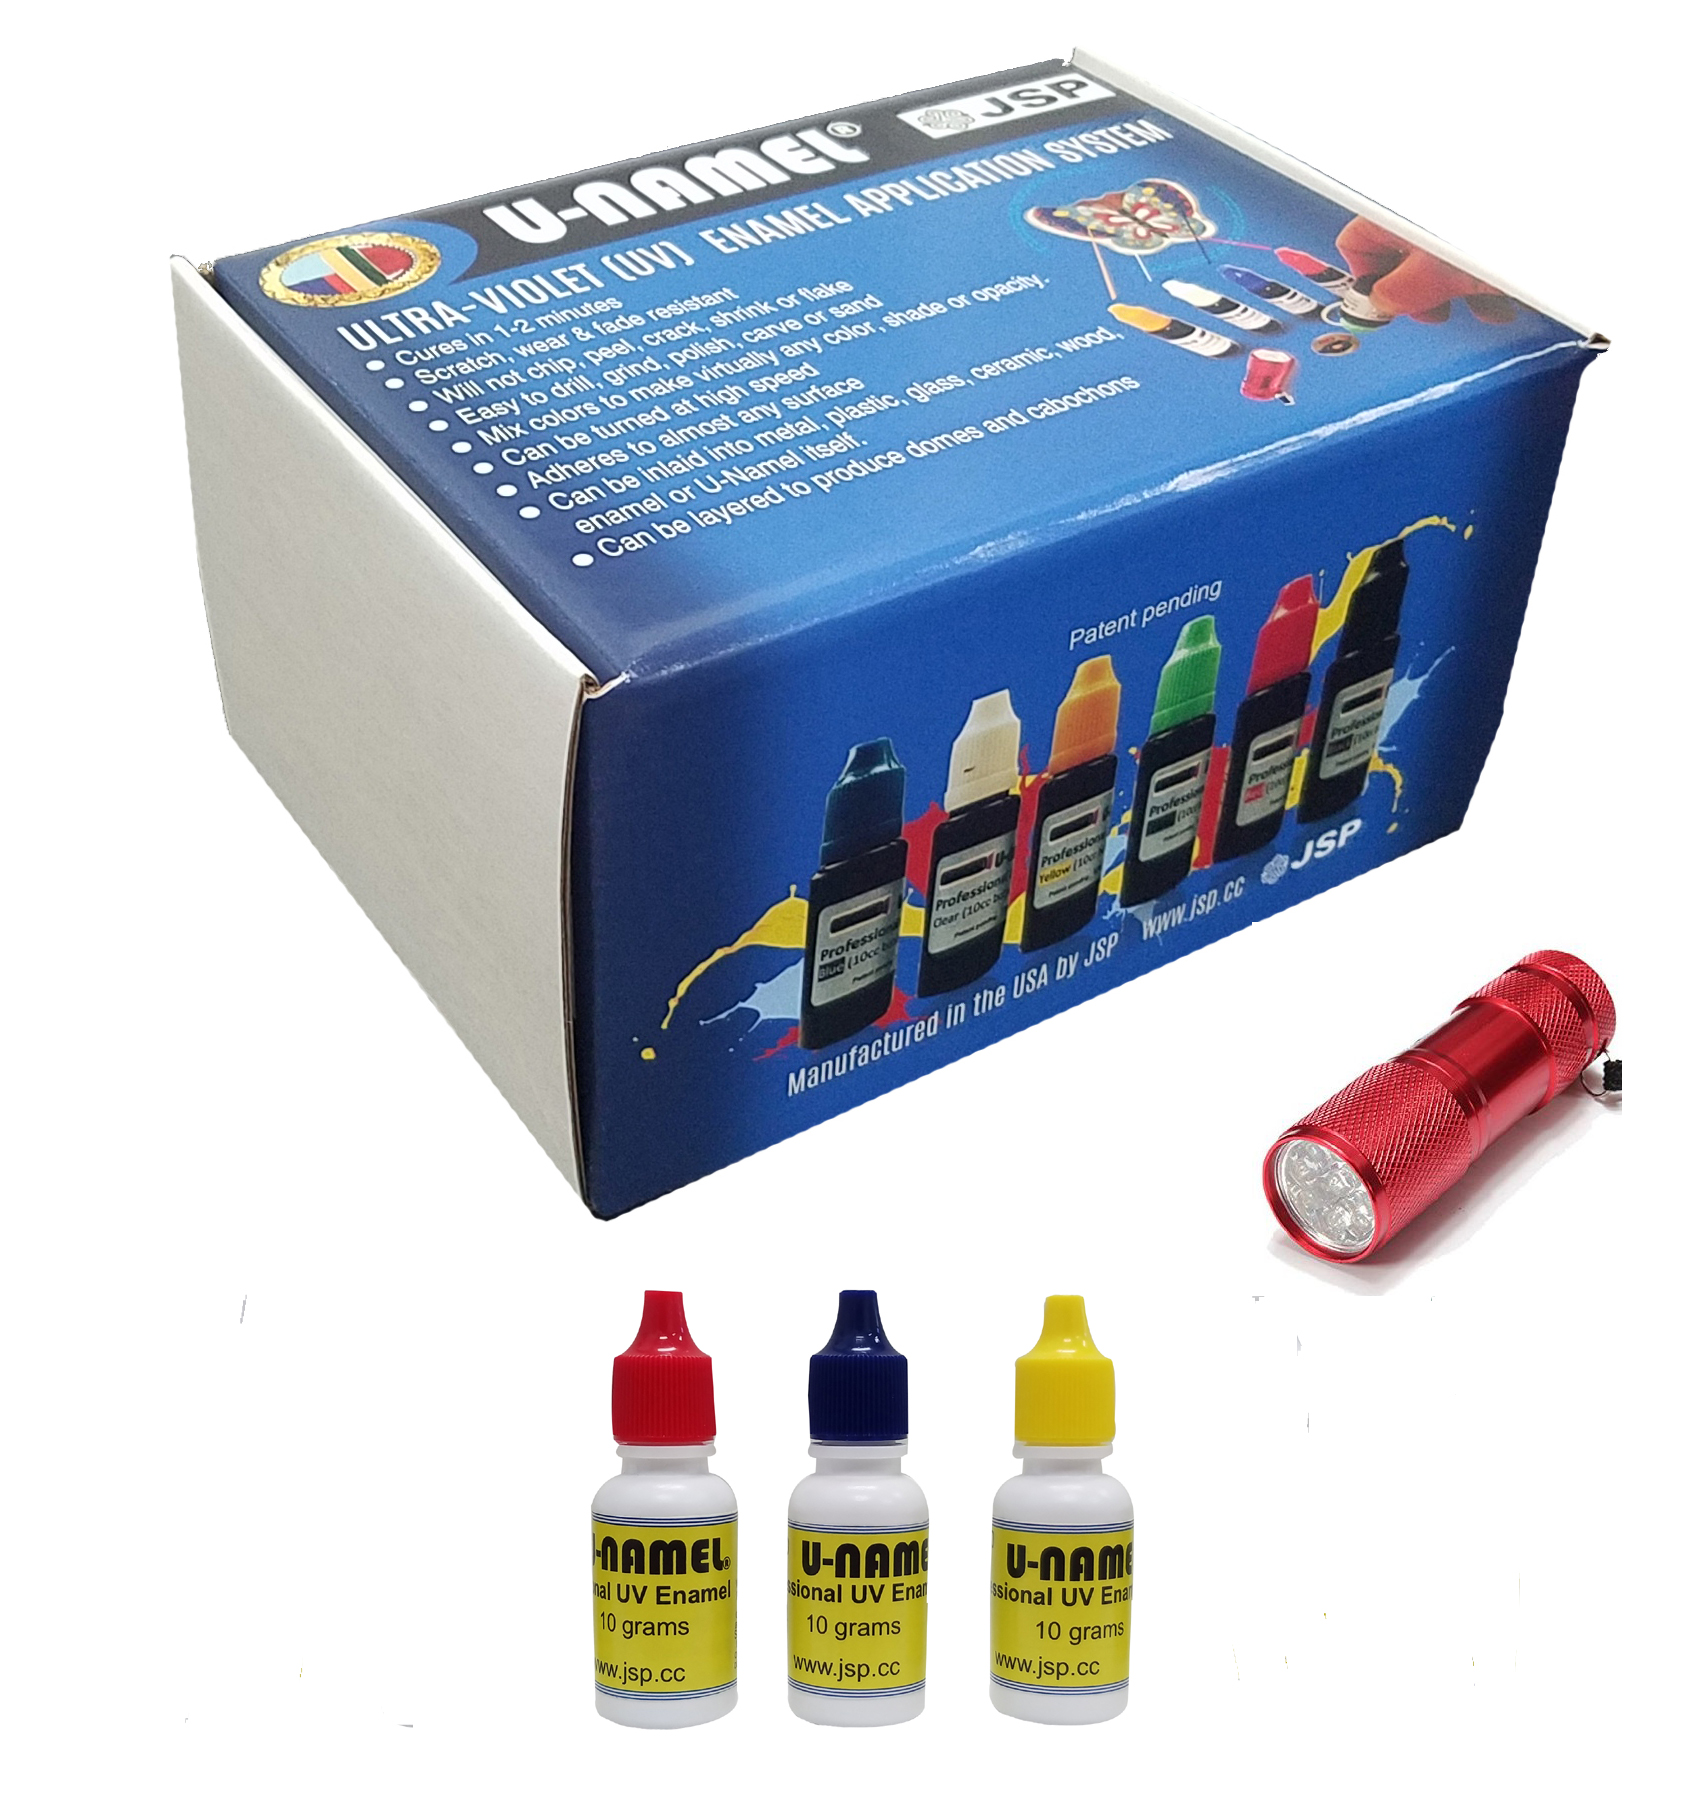 U-NAMEL® starter kit, 3 colors+ led - Click Image to Close